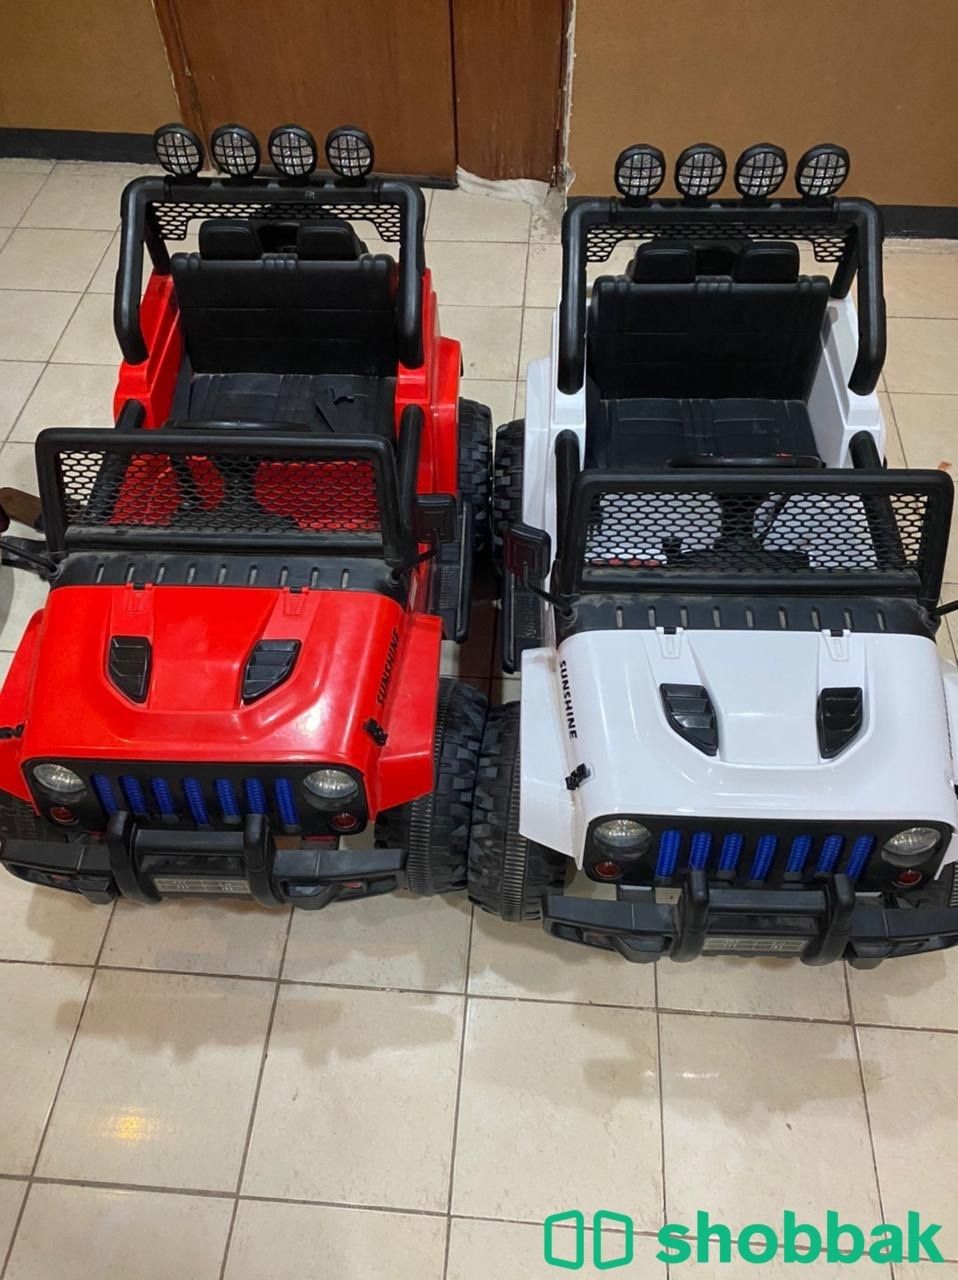 2 سيارات اطفال كهربائية رائعه تعمل بشكل جميل جدًا سعر الواحده ب 500 ريال فقط 😍 Shobbak Saudi Arabia